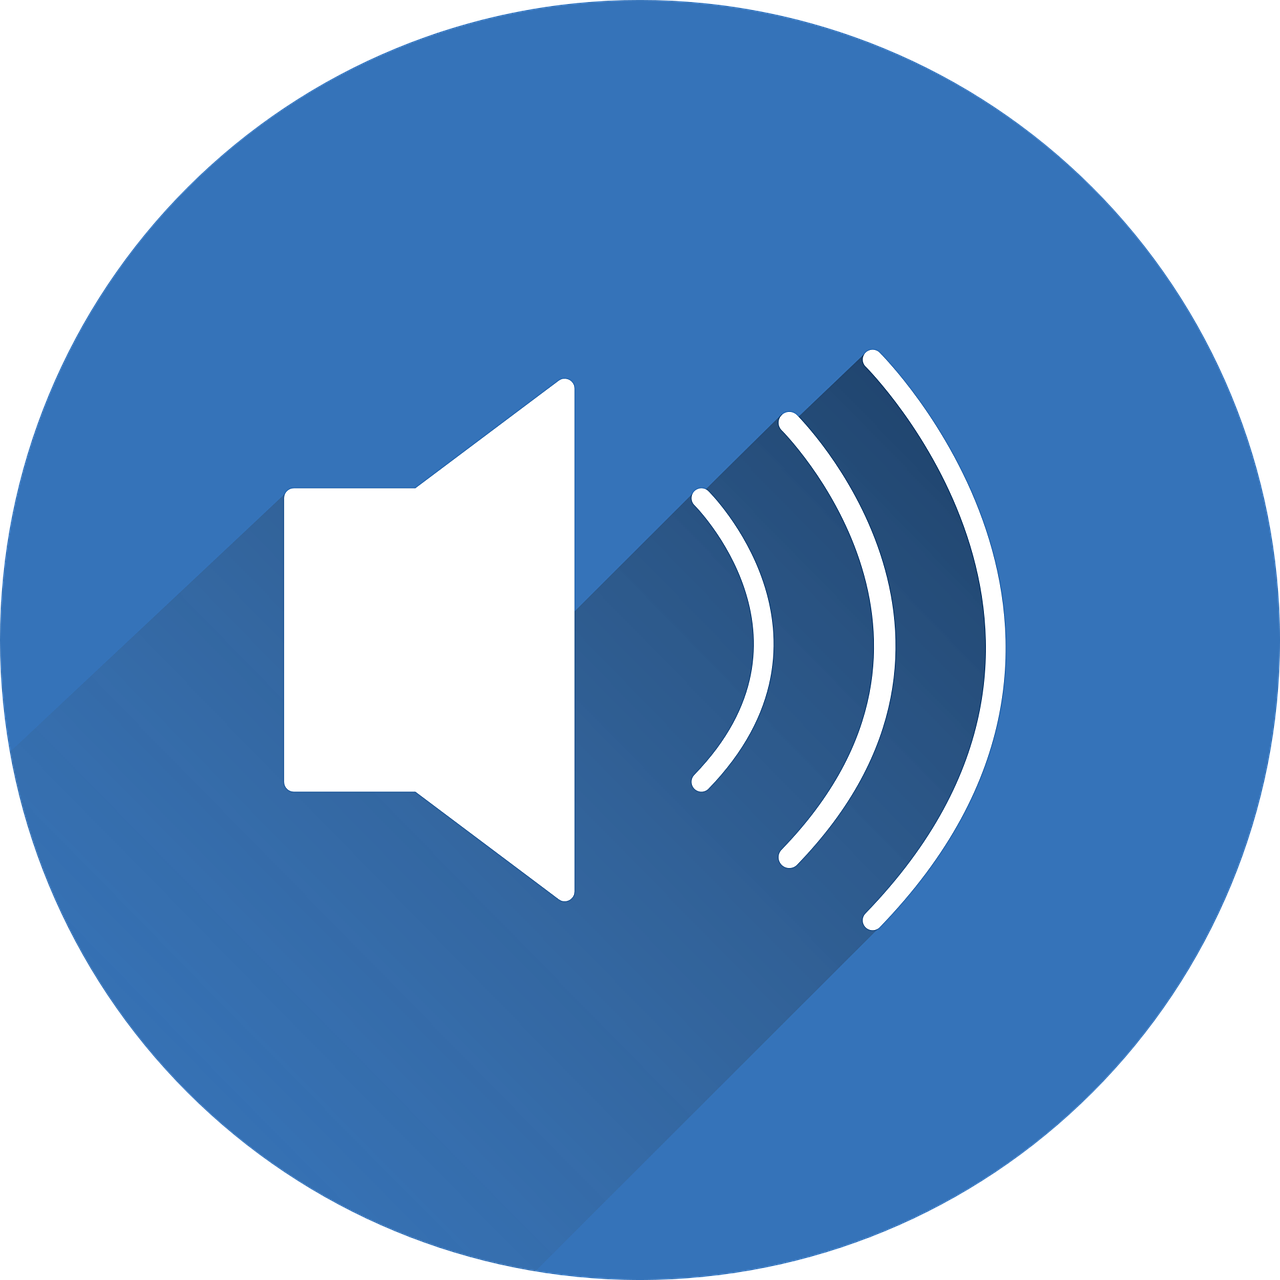 speaker sound icon free photo